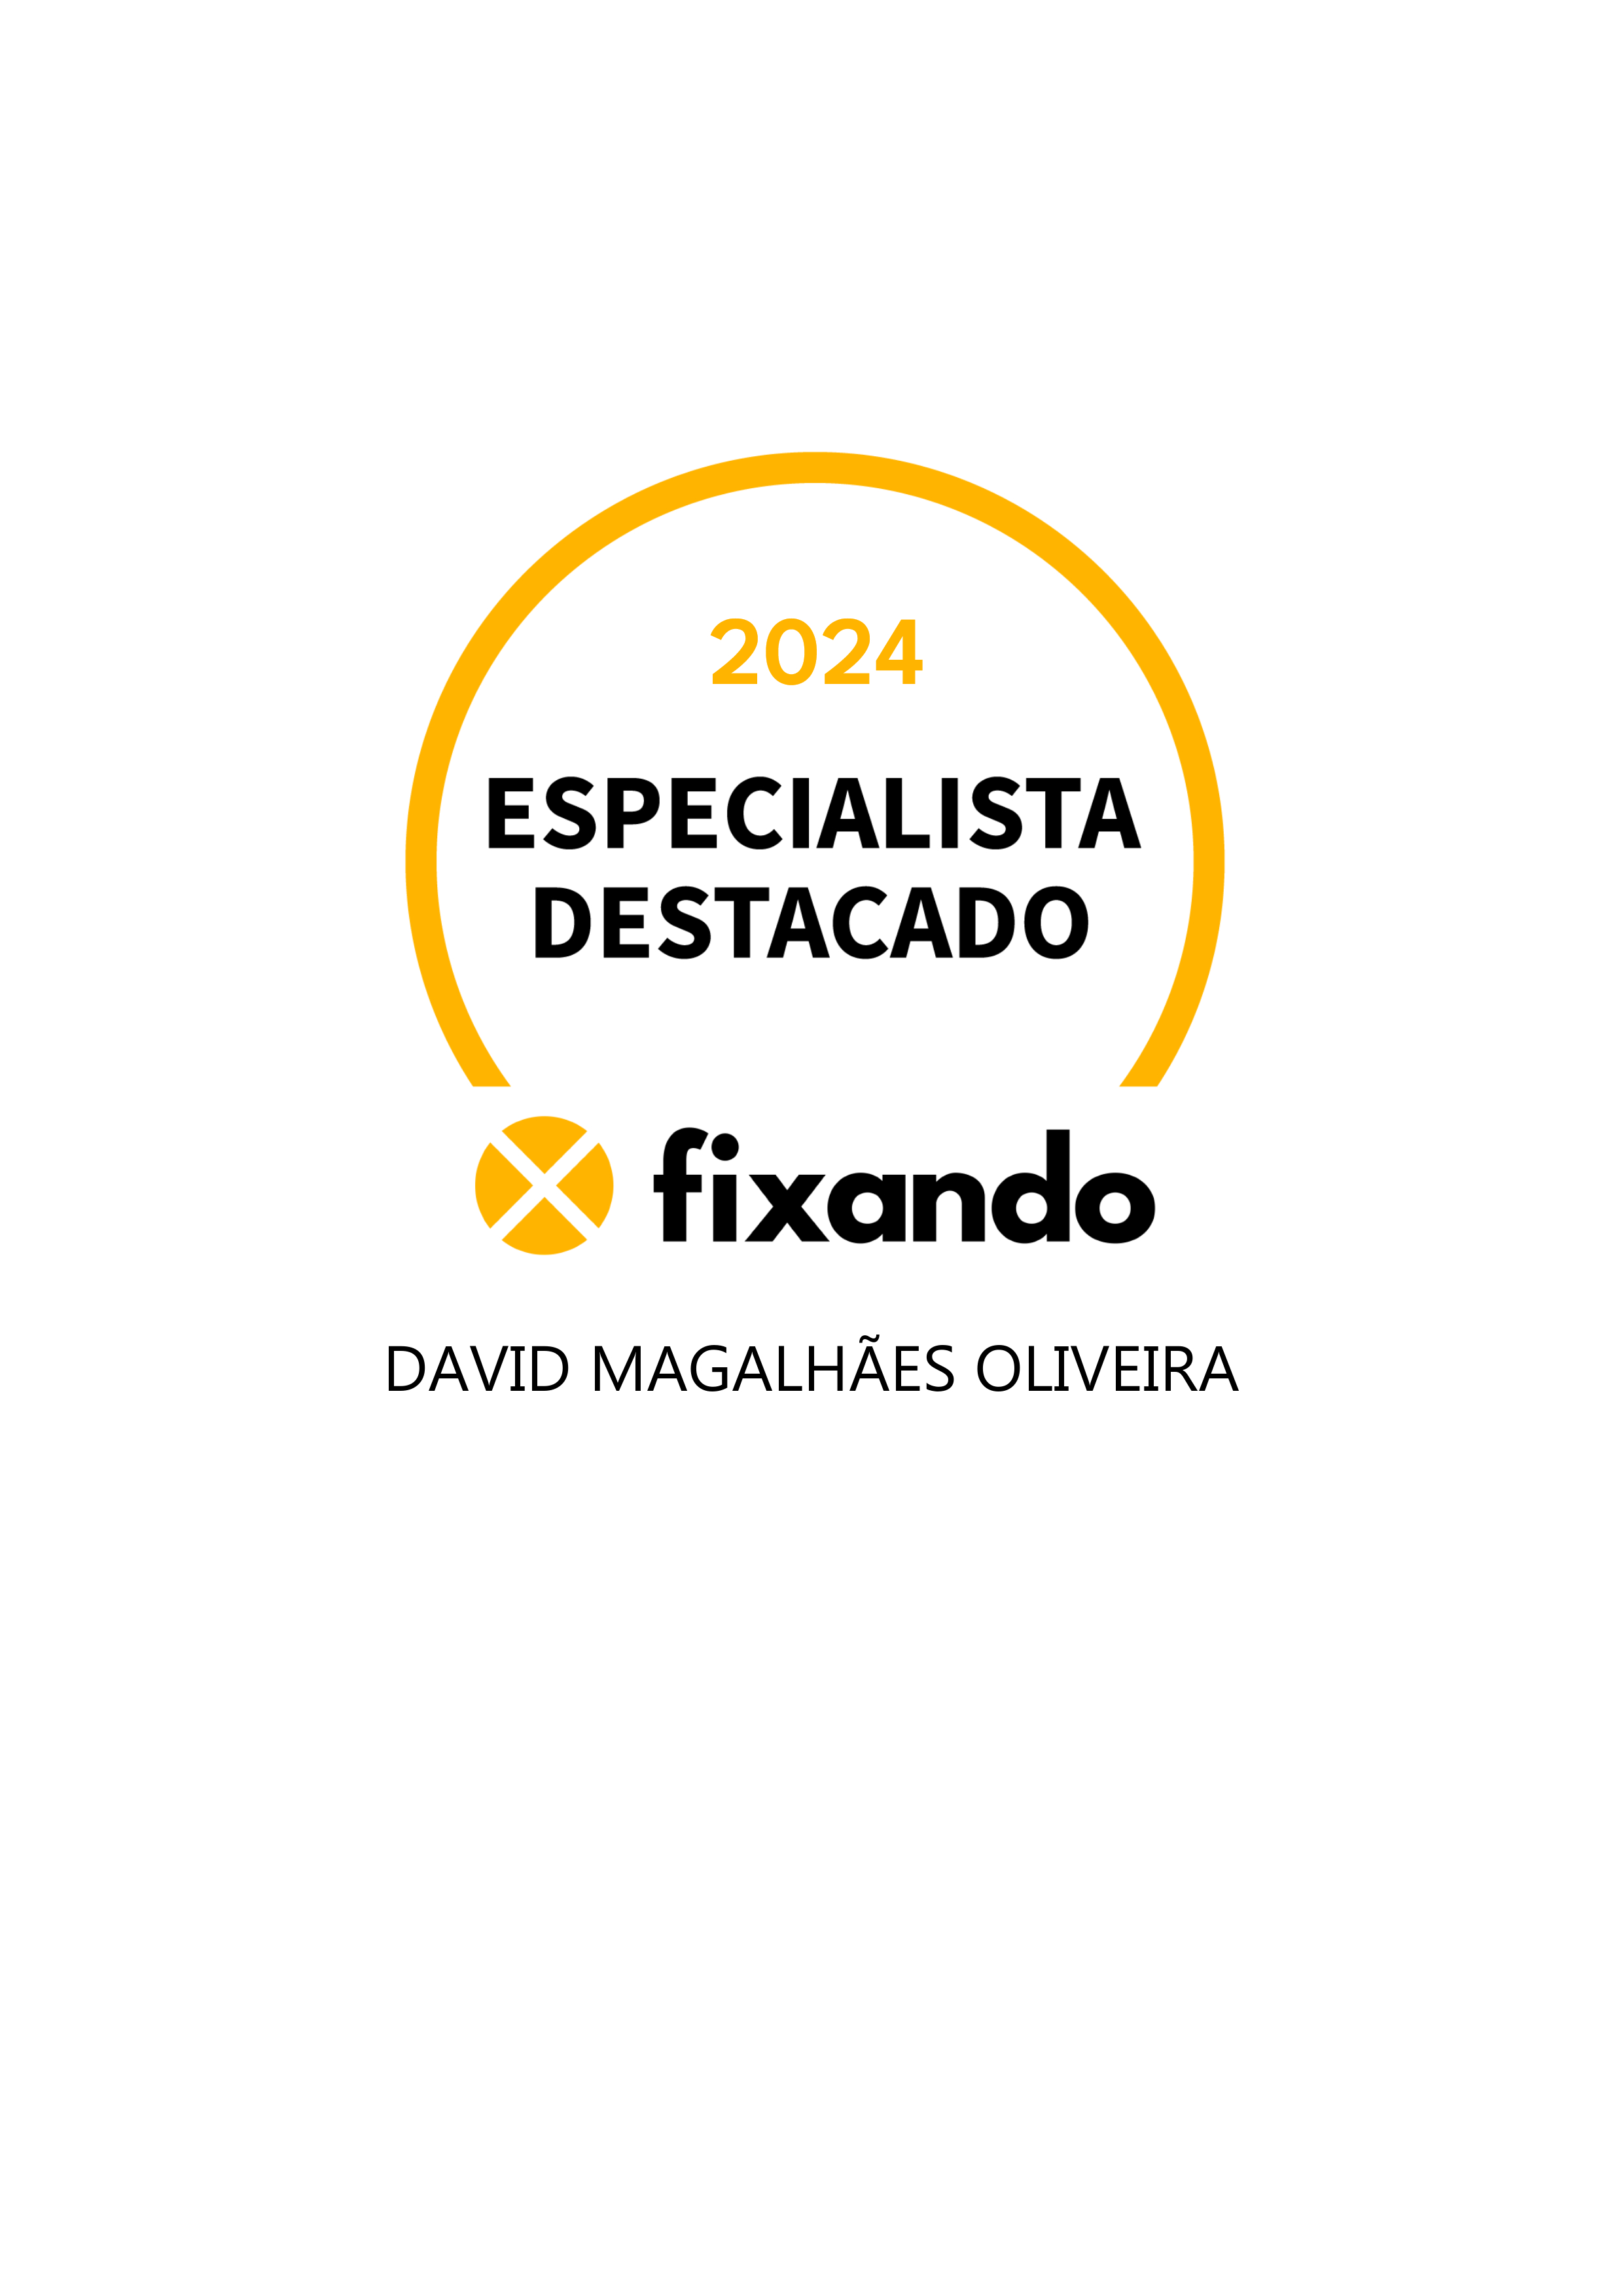 David Magalhães Oliveira - Mafra - Instalação de Pavimento Vinílico ou Linóleo